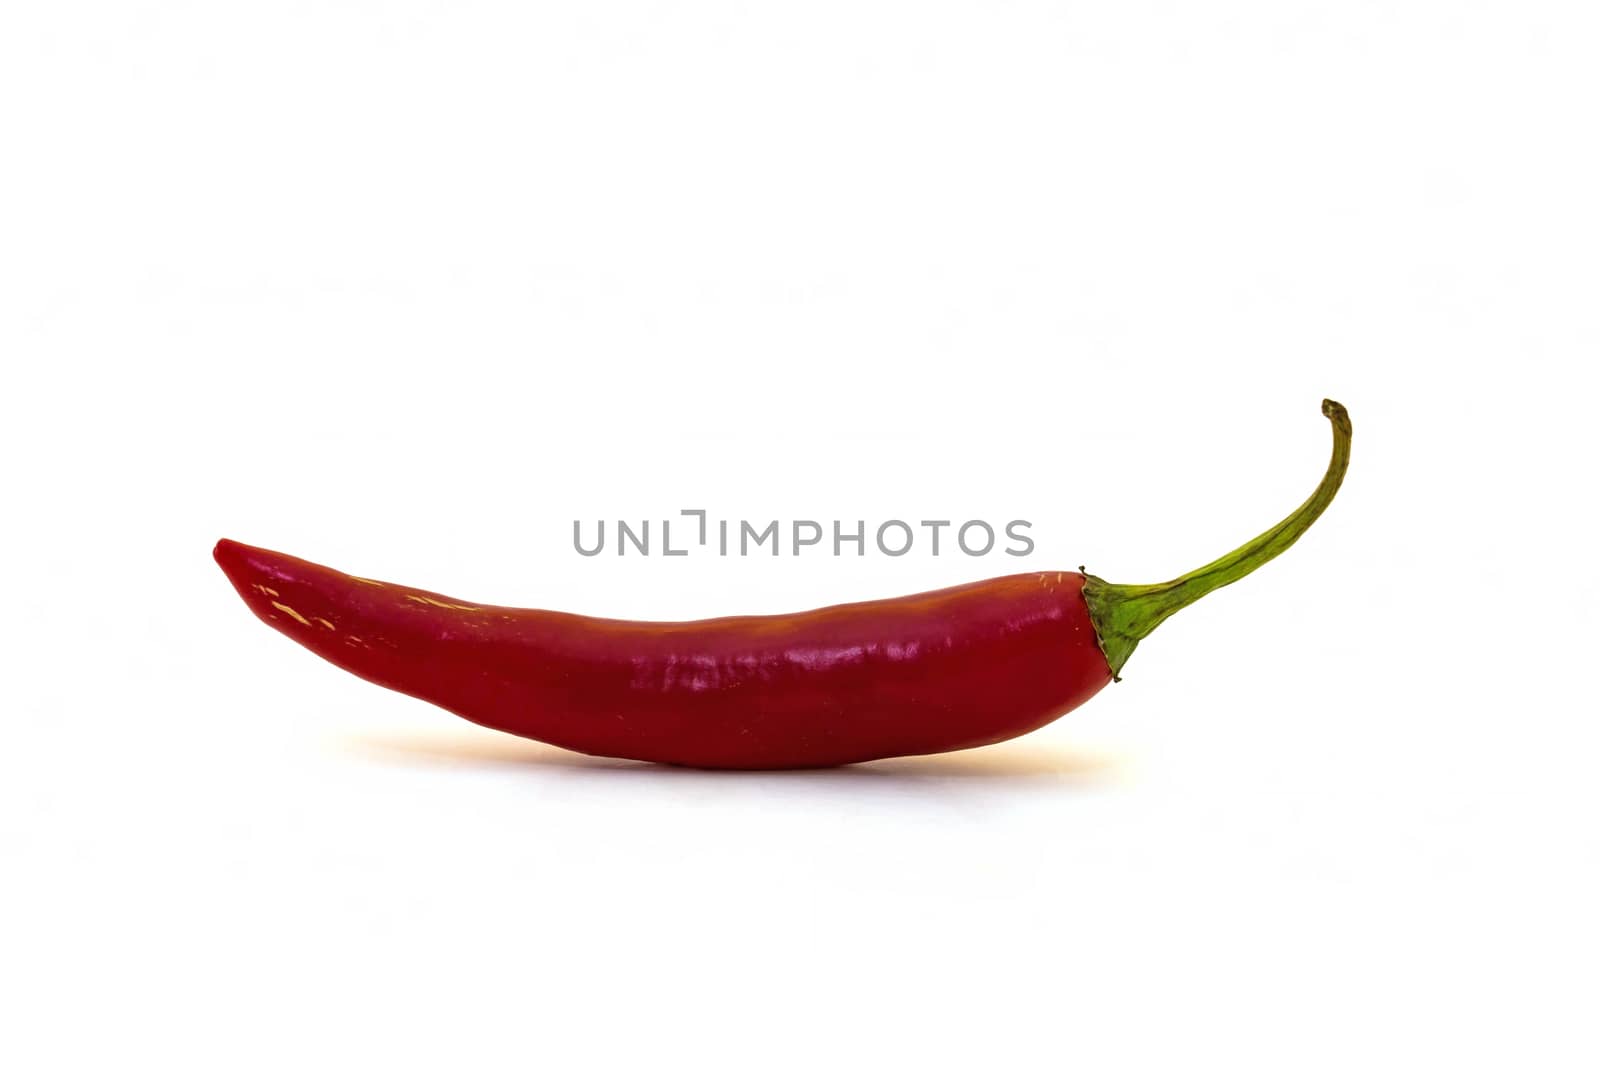 Chili pepper by Digoarpi